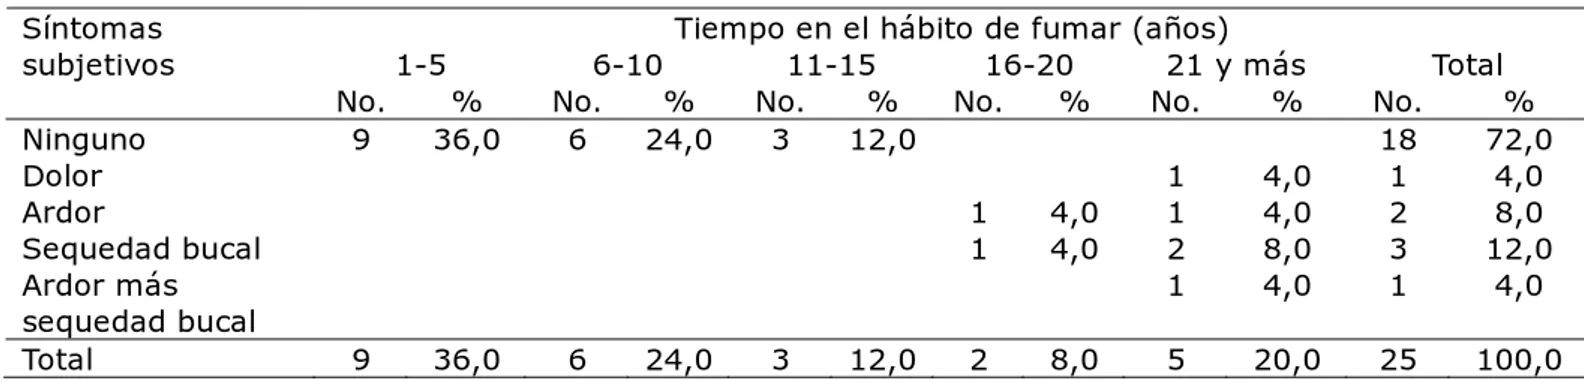 Tabla 2.  Relación entre síntomas subjetivos y tiempo en el hábito de fumar  Tiempo en el hábito de fumar (años) 